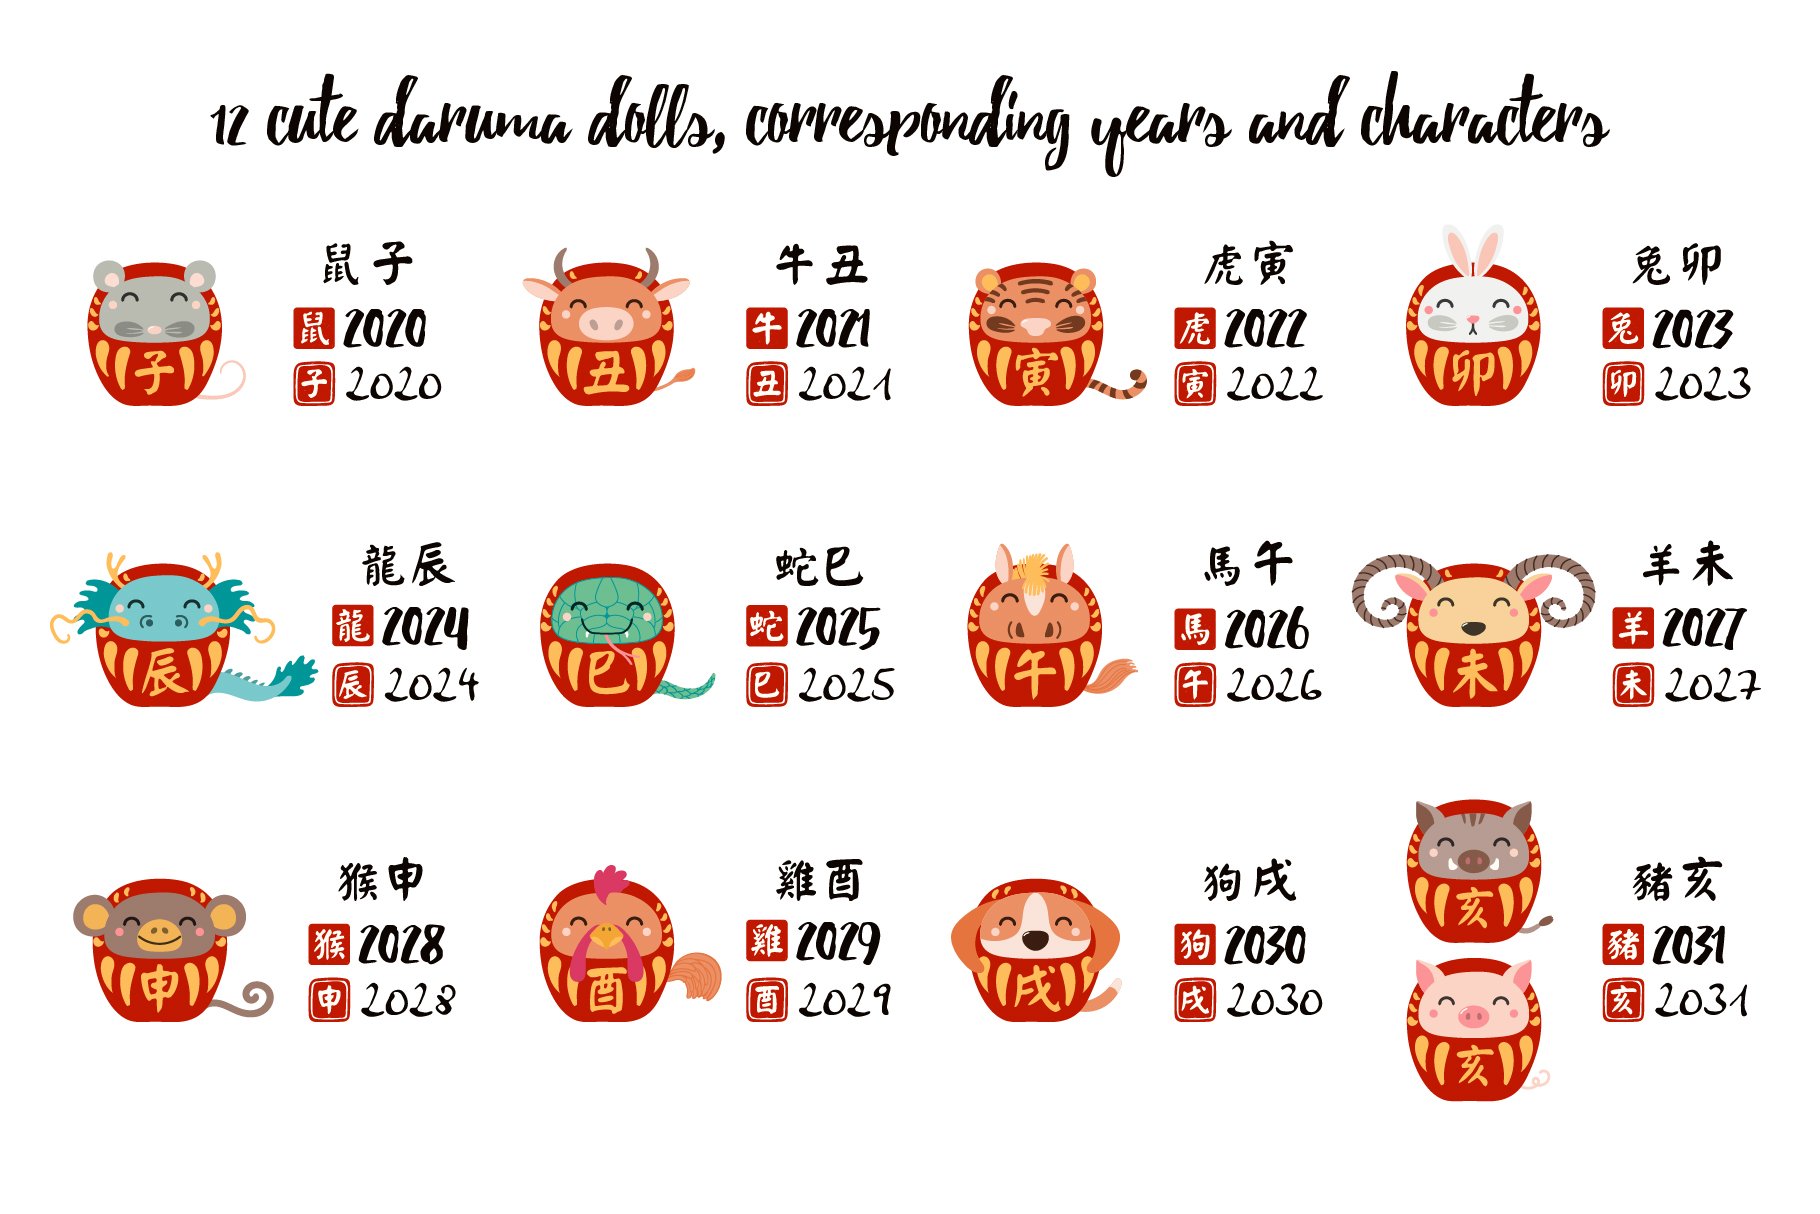 Chinese zodiac characters.